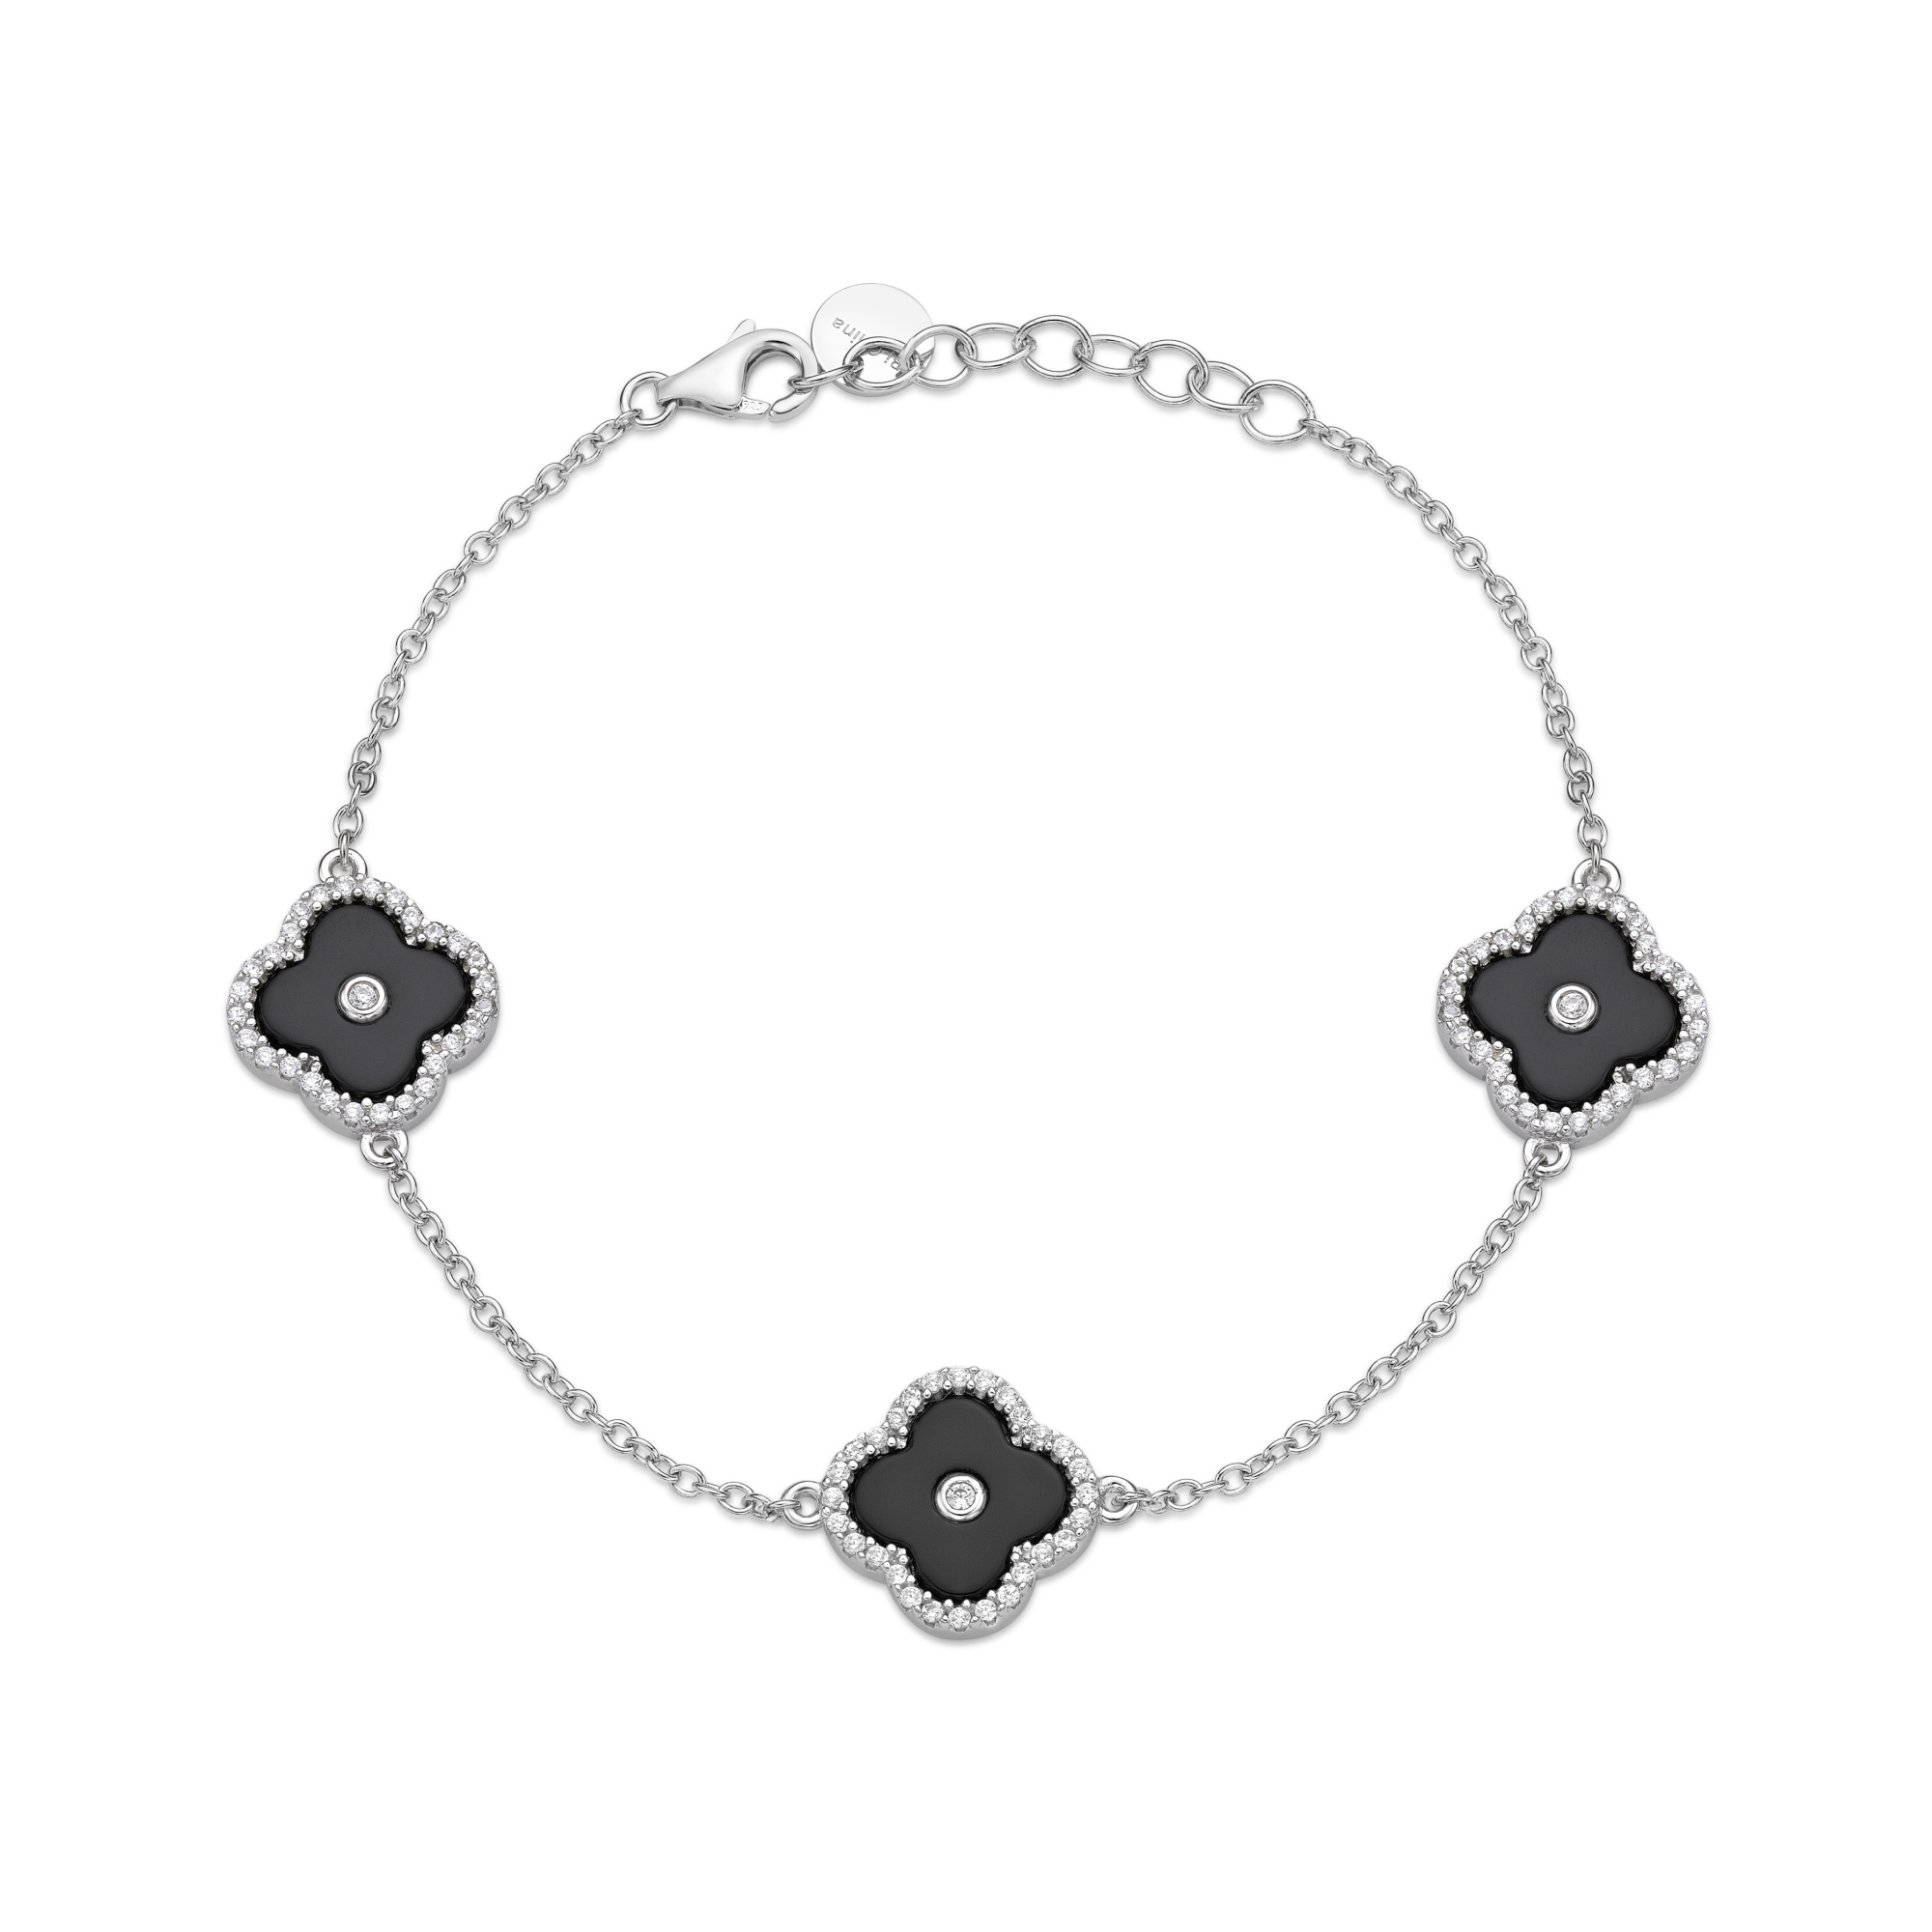 50972-bracelet-fashion-jewelry-sterling-silver-50972-2-1.jpg